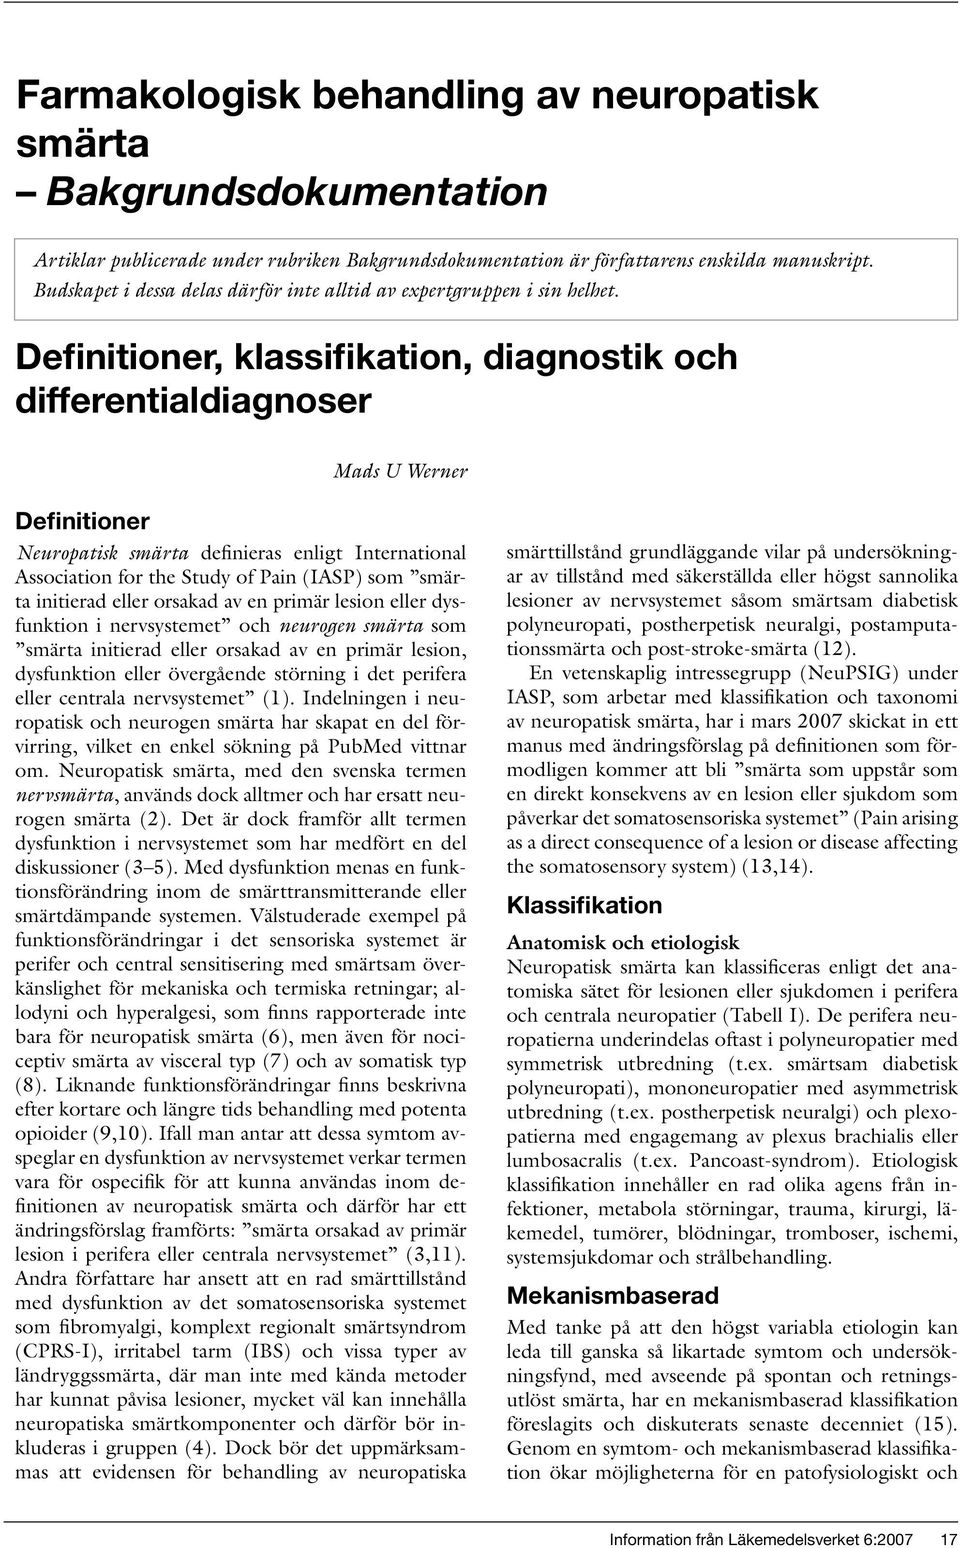 Definitioner, klassifikation, diagnostik och differentialdiagnoser Mads U Werner Definitioner Neuropatisk smärta definieras enligt International Association for the Study of Pain (IASP) som smärta